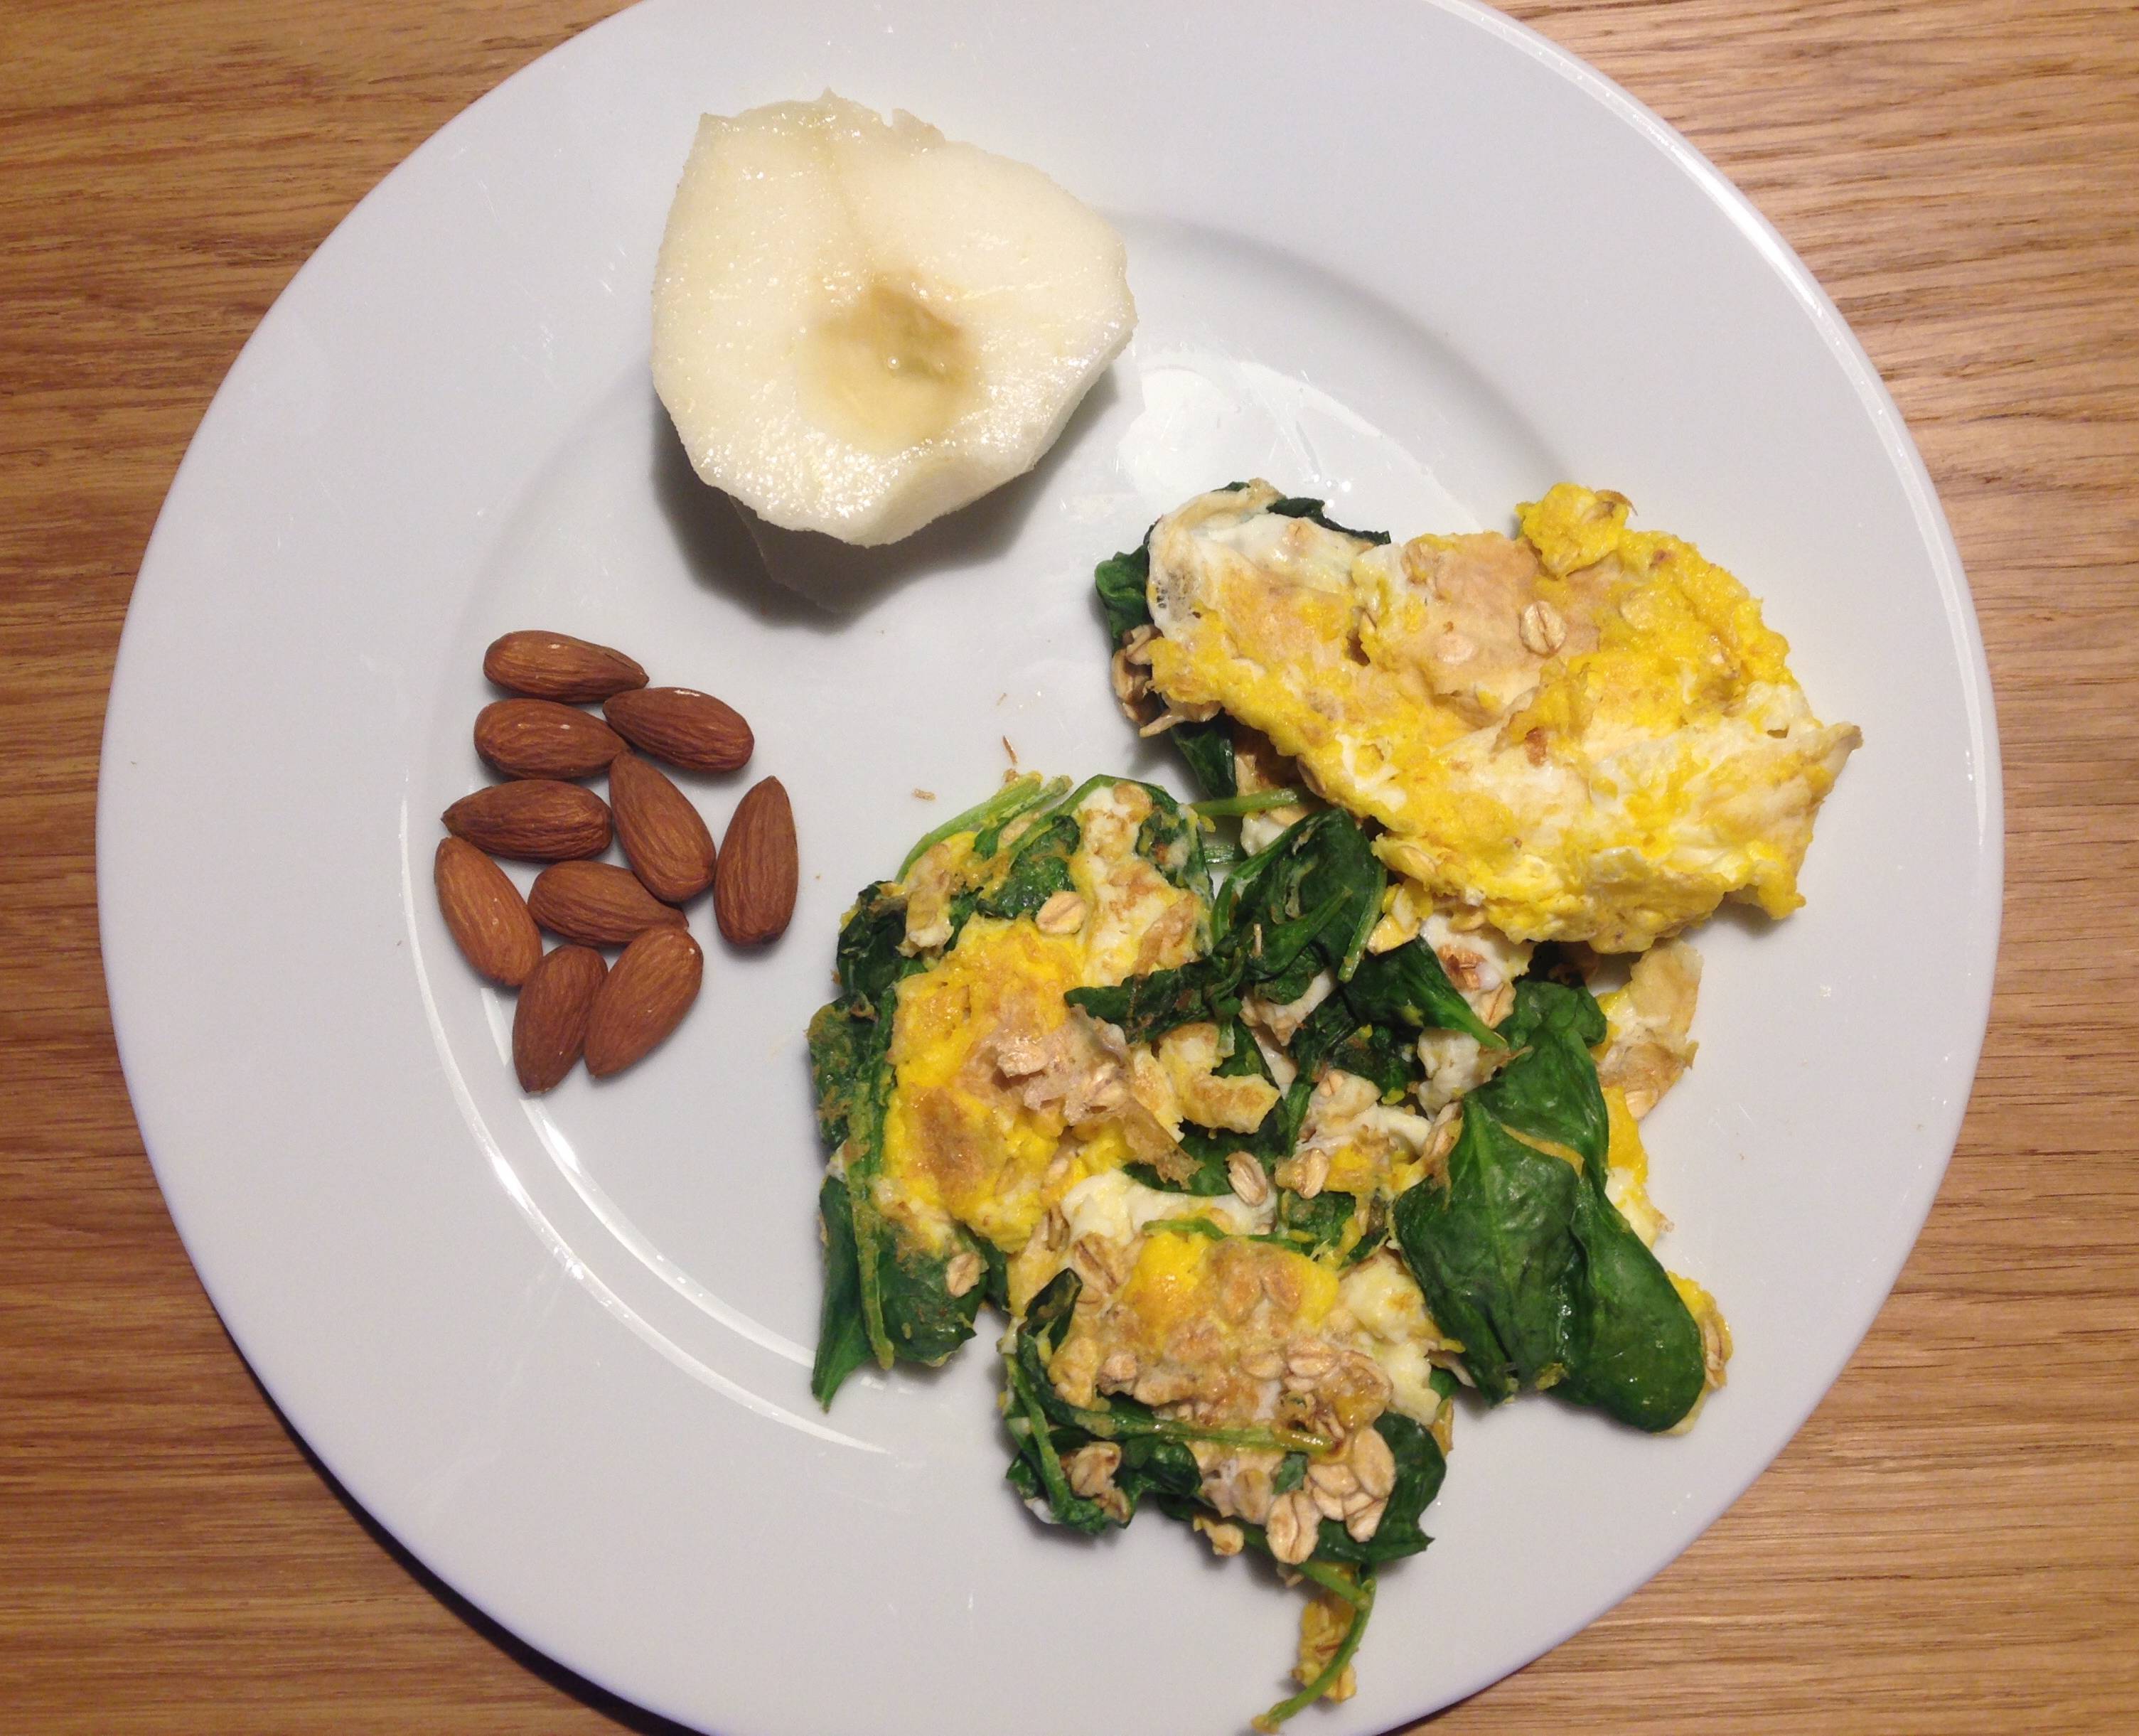 colazione completa: proteine, carboidrati, grassi e verdura